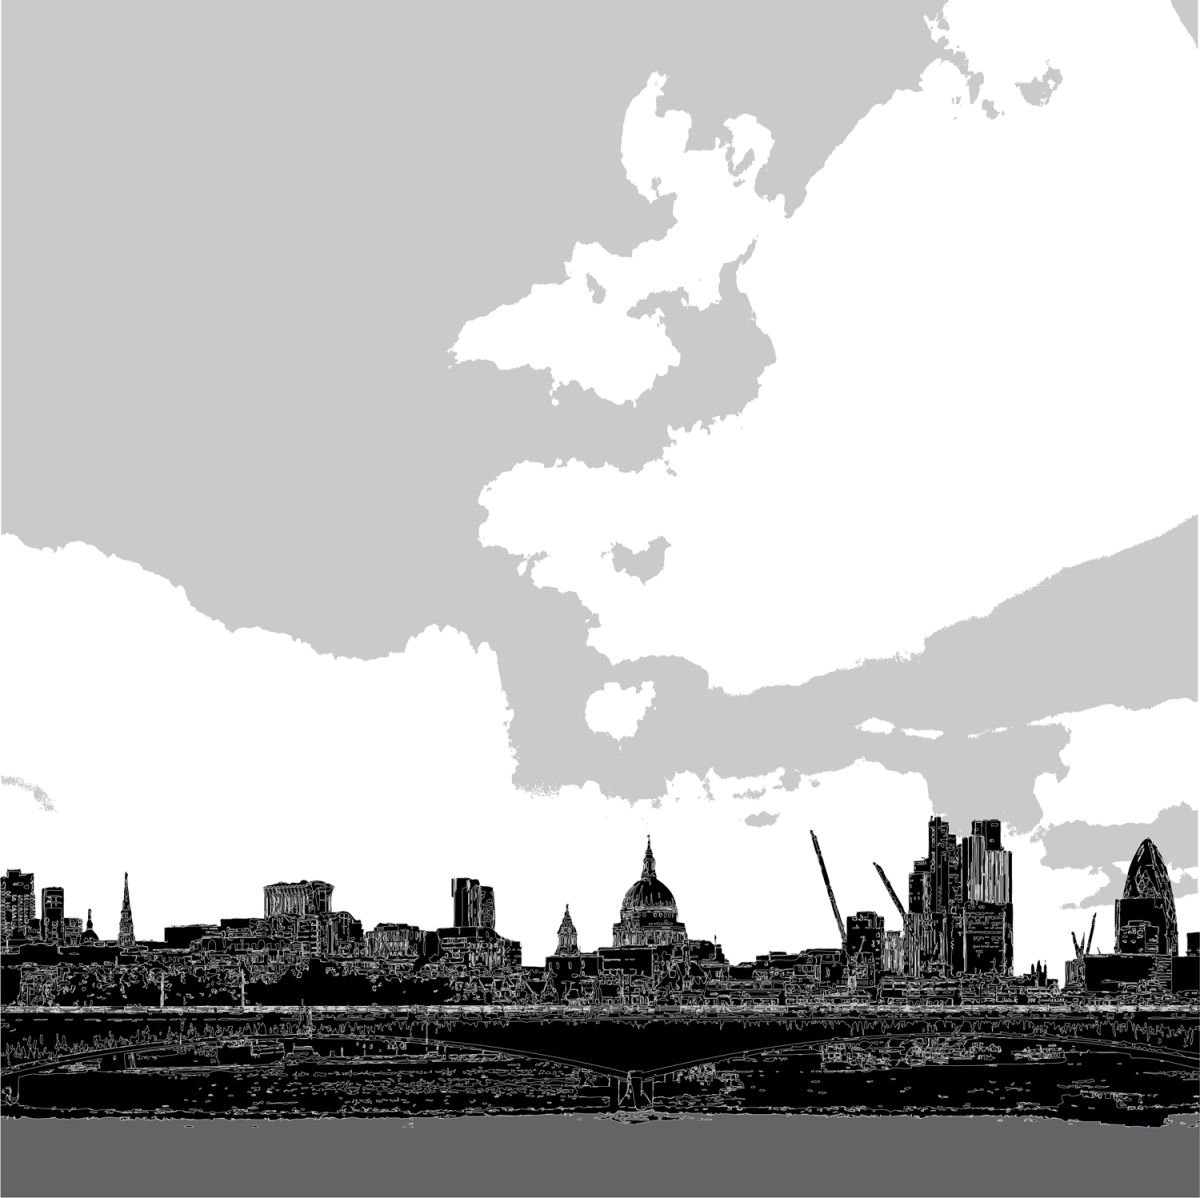 LONDON SKYLINE B&W by Keith Dodd